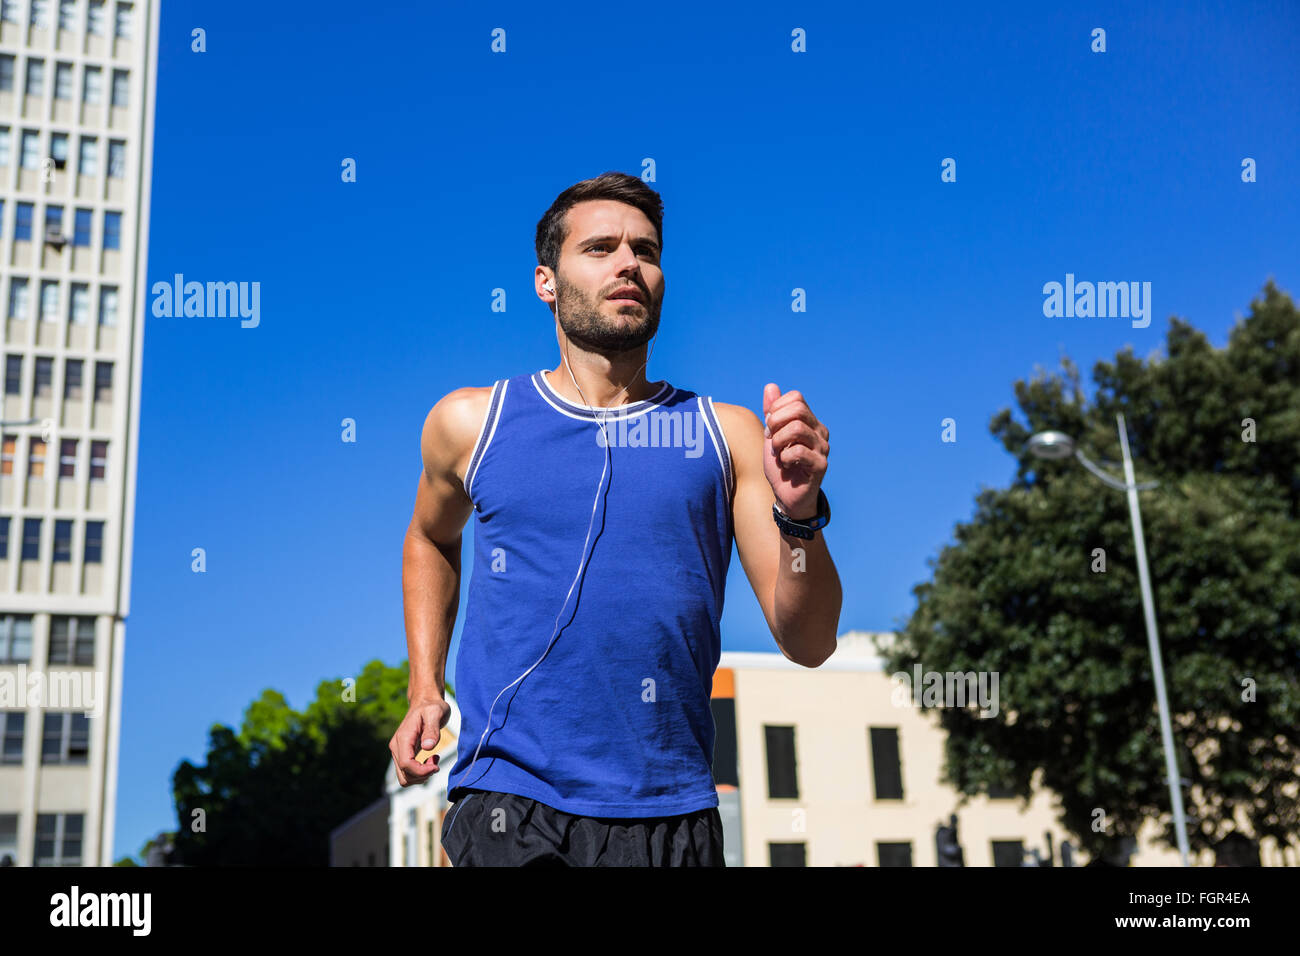 Bello atleta jogging contro il cielo blu Foto Stock